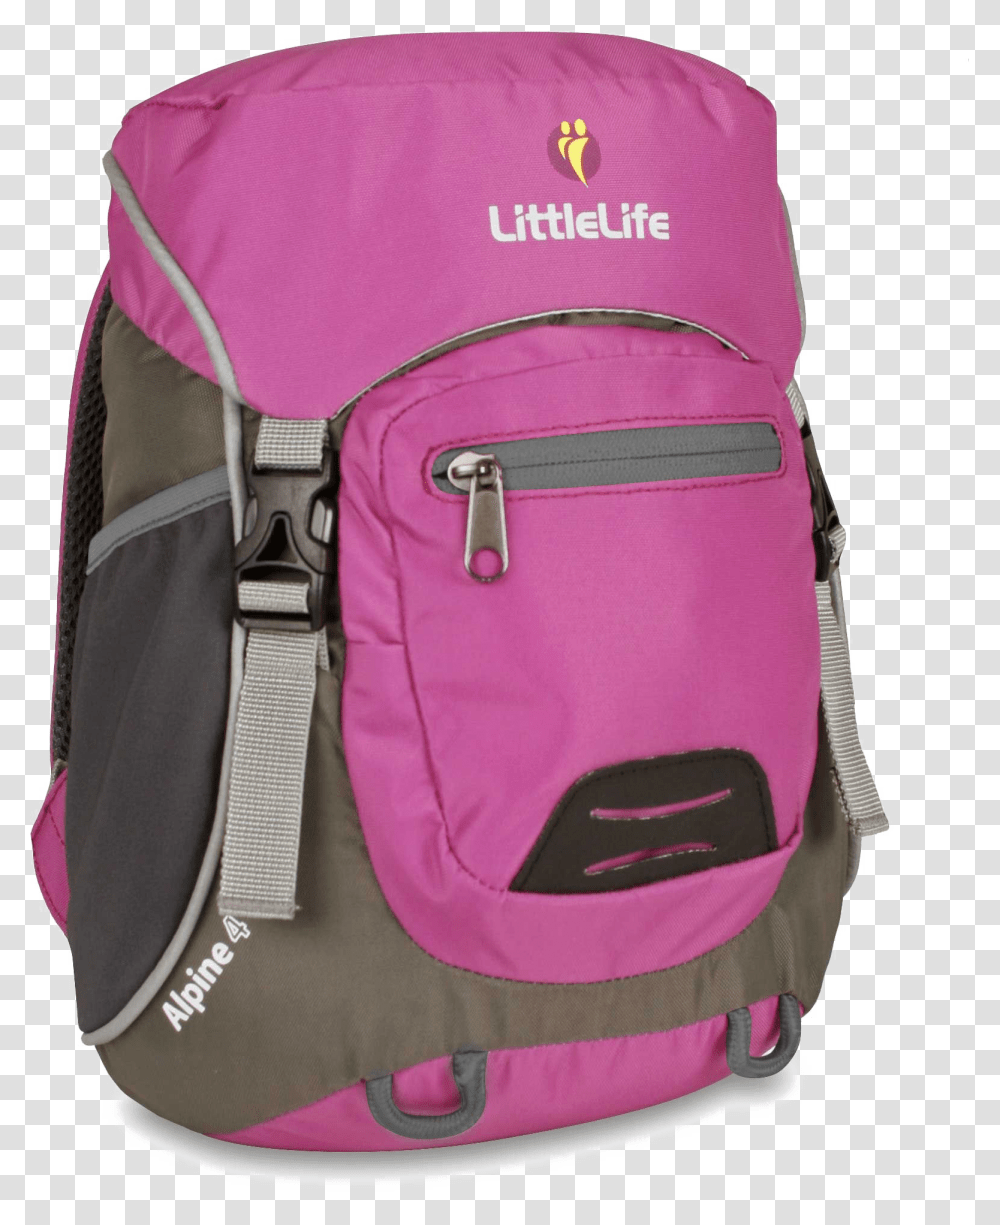 School Bag Download Image School Bag File, Backpack Transparent Png